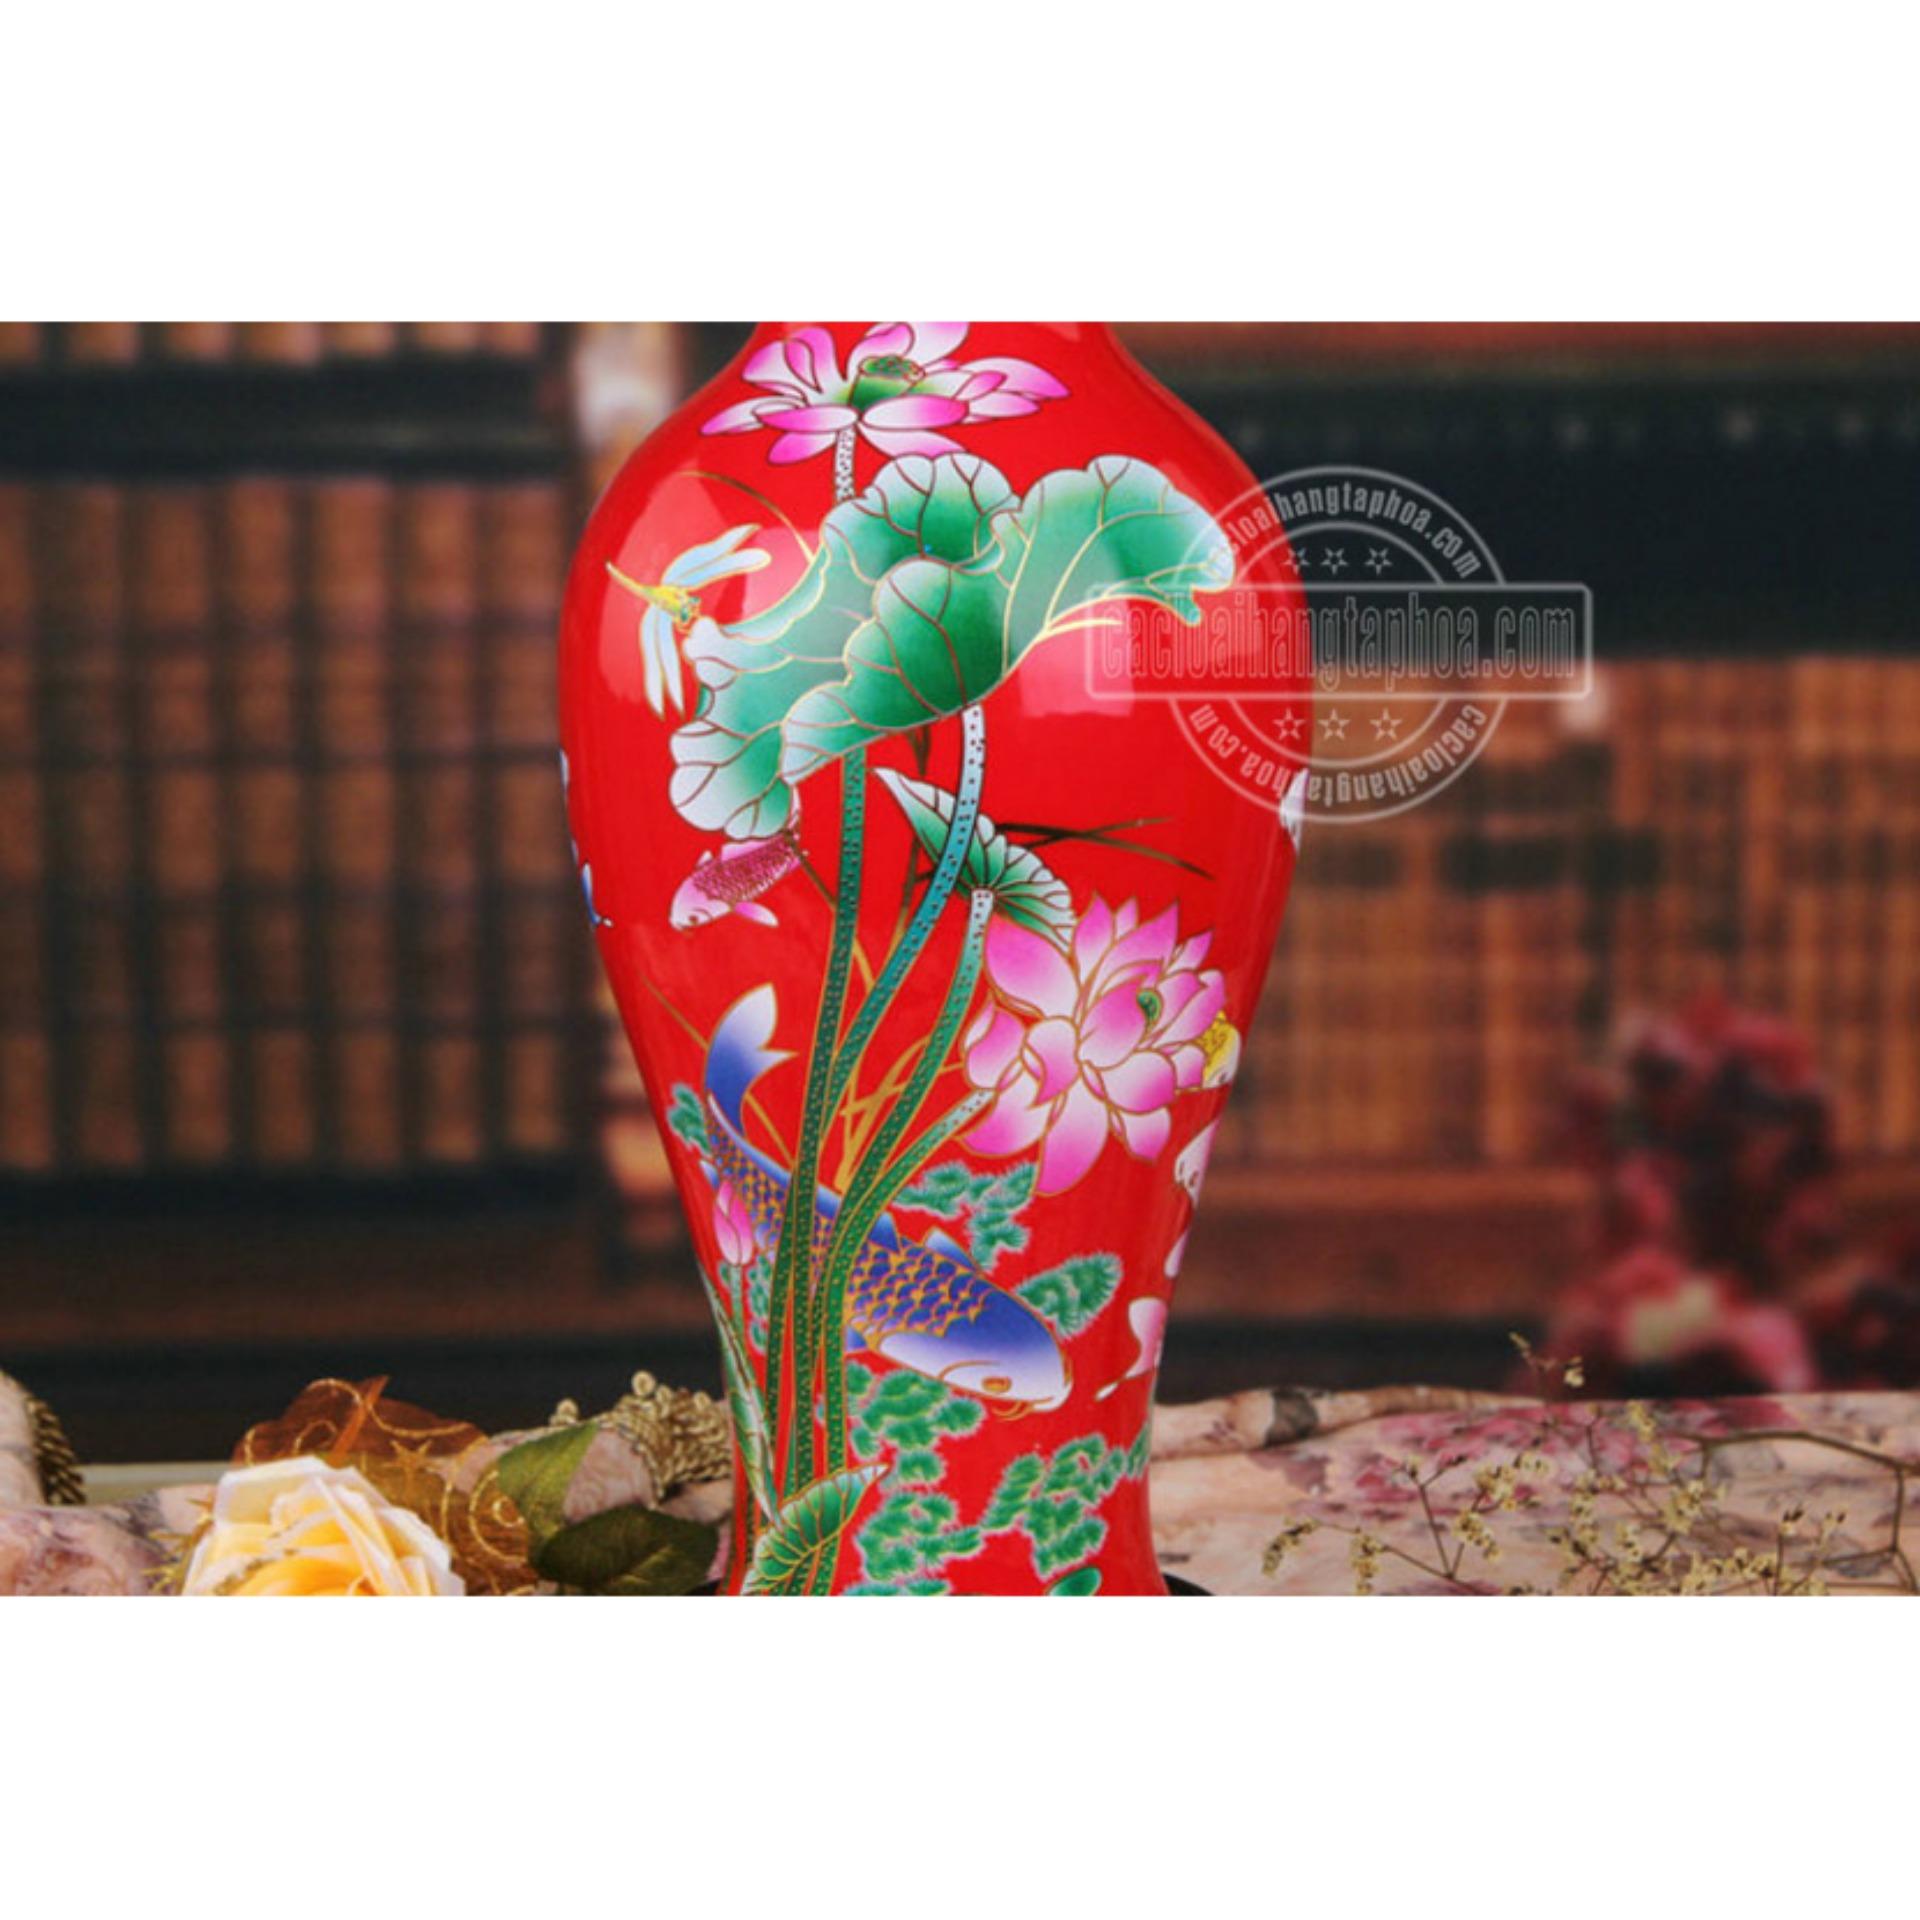 Bình hoa gốm sứ Cảnh Đức chất lượng cao màu đỏ họa tiết hoa súng cá vàng, MS xzgh007-R-7